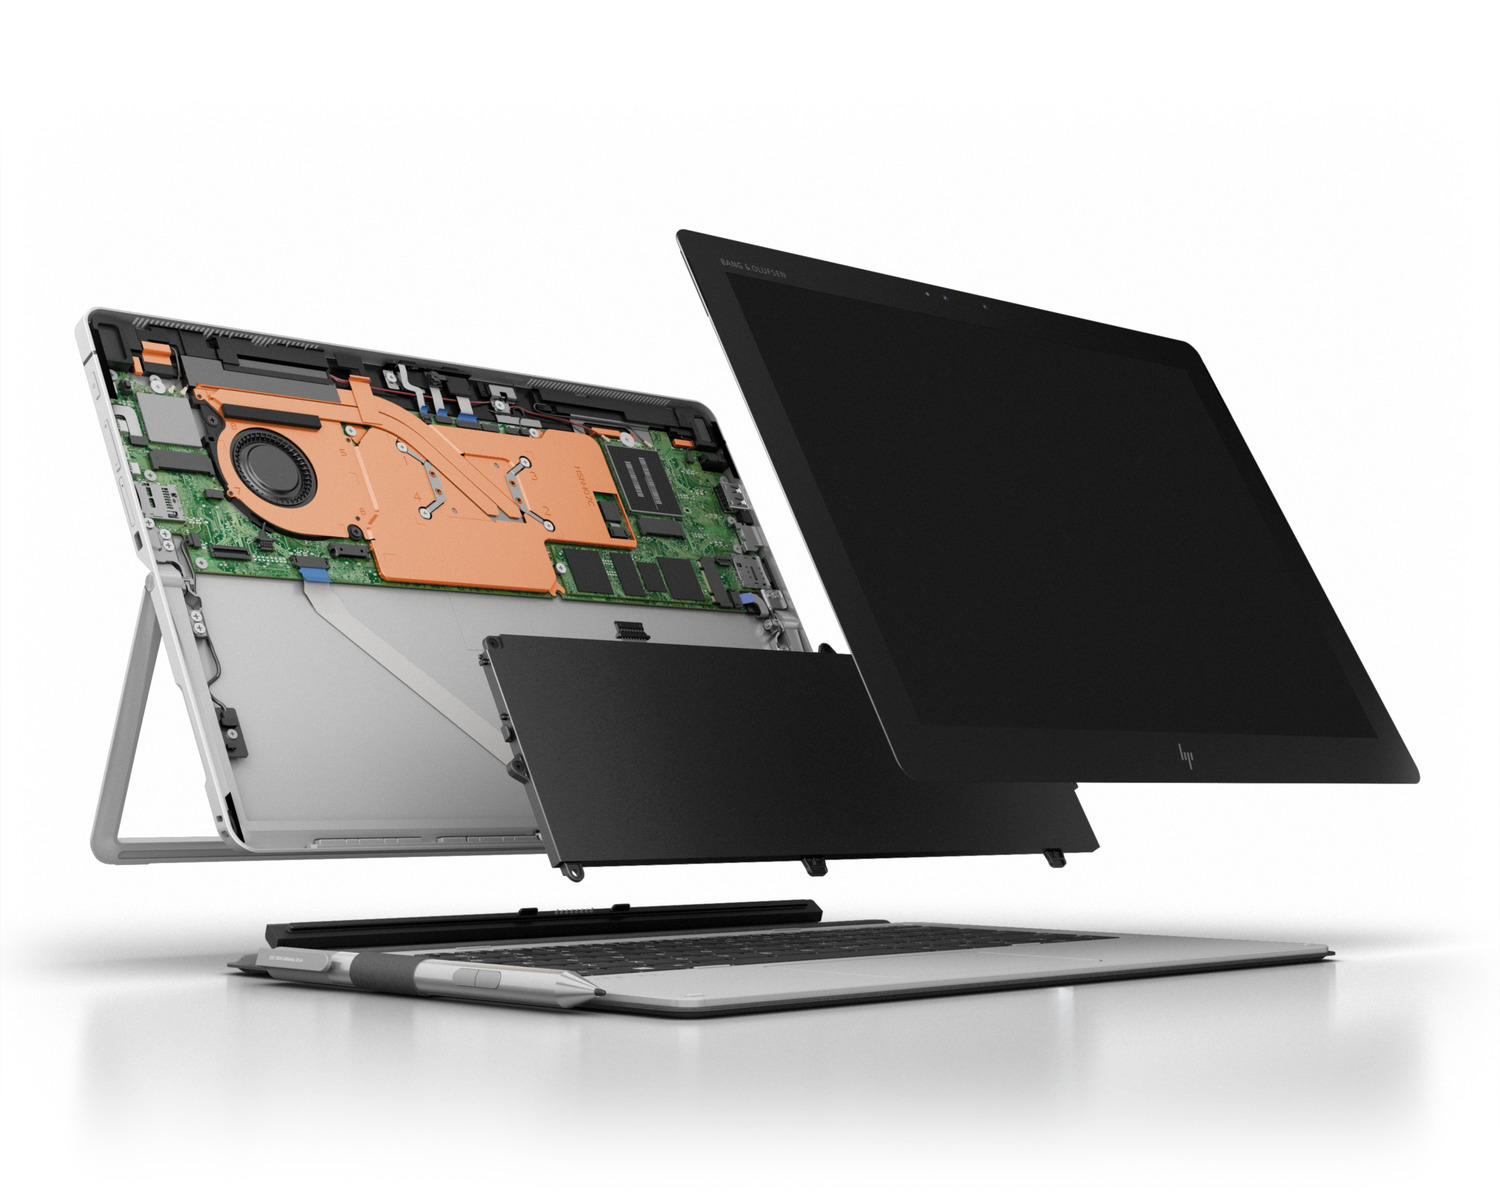 hp introduces elite x2 1012 g2 business detachable tablet serviceability image